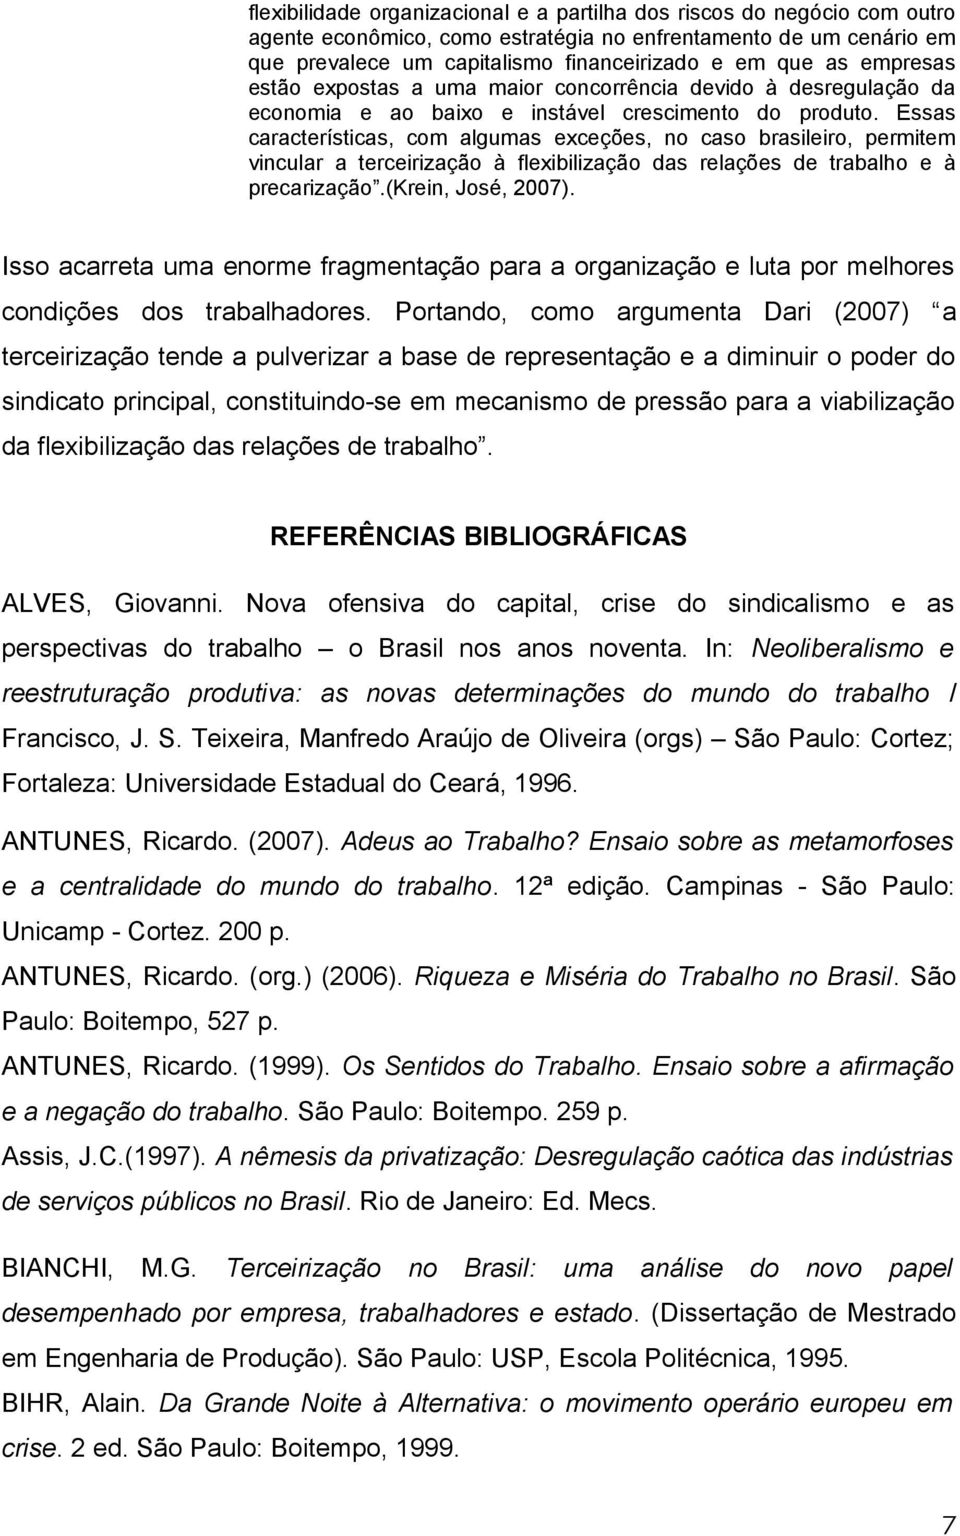 Essas características, com algumas exceções, no caso brasileiro, permitem vincular a terceirização à flexibilização das relações de trabalho e à precarização.(krein, José, 2007).